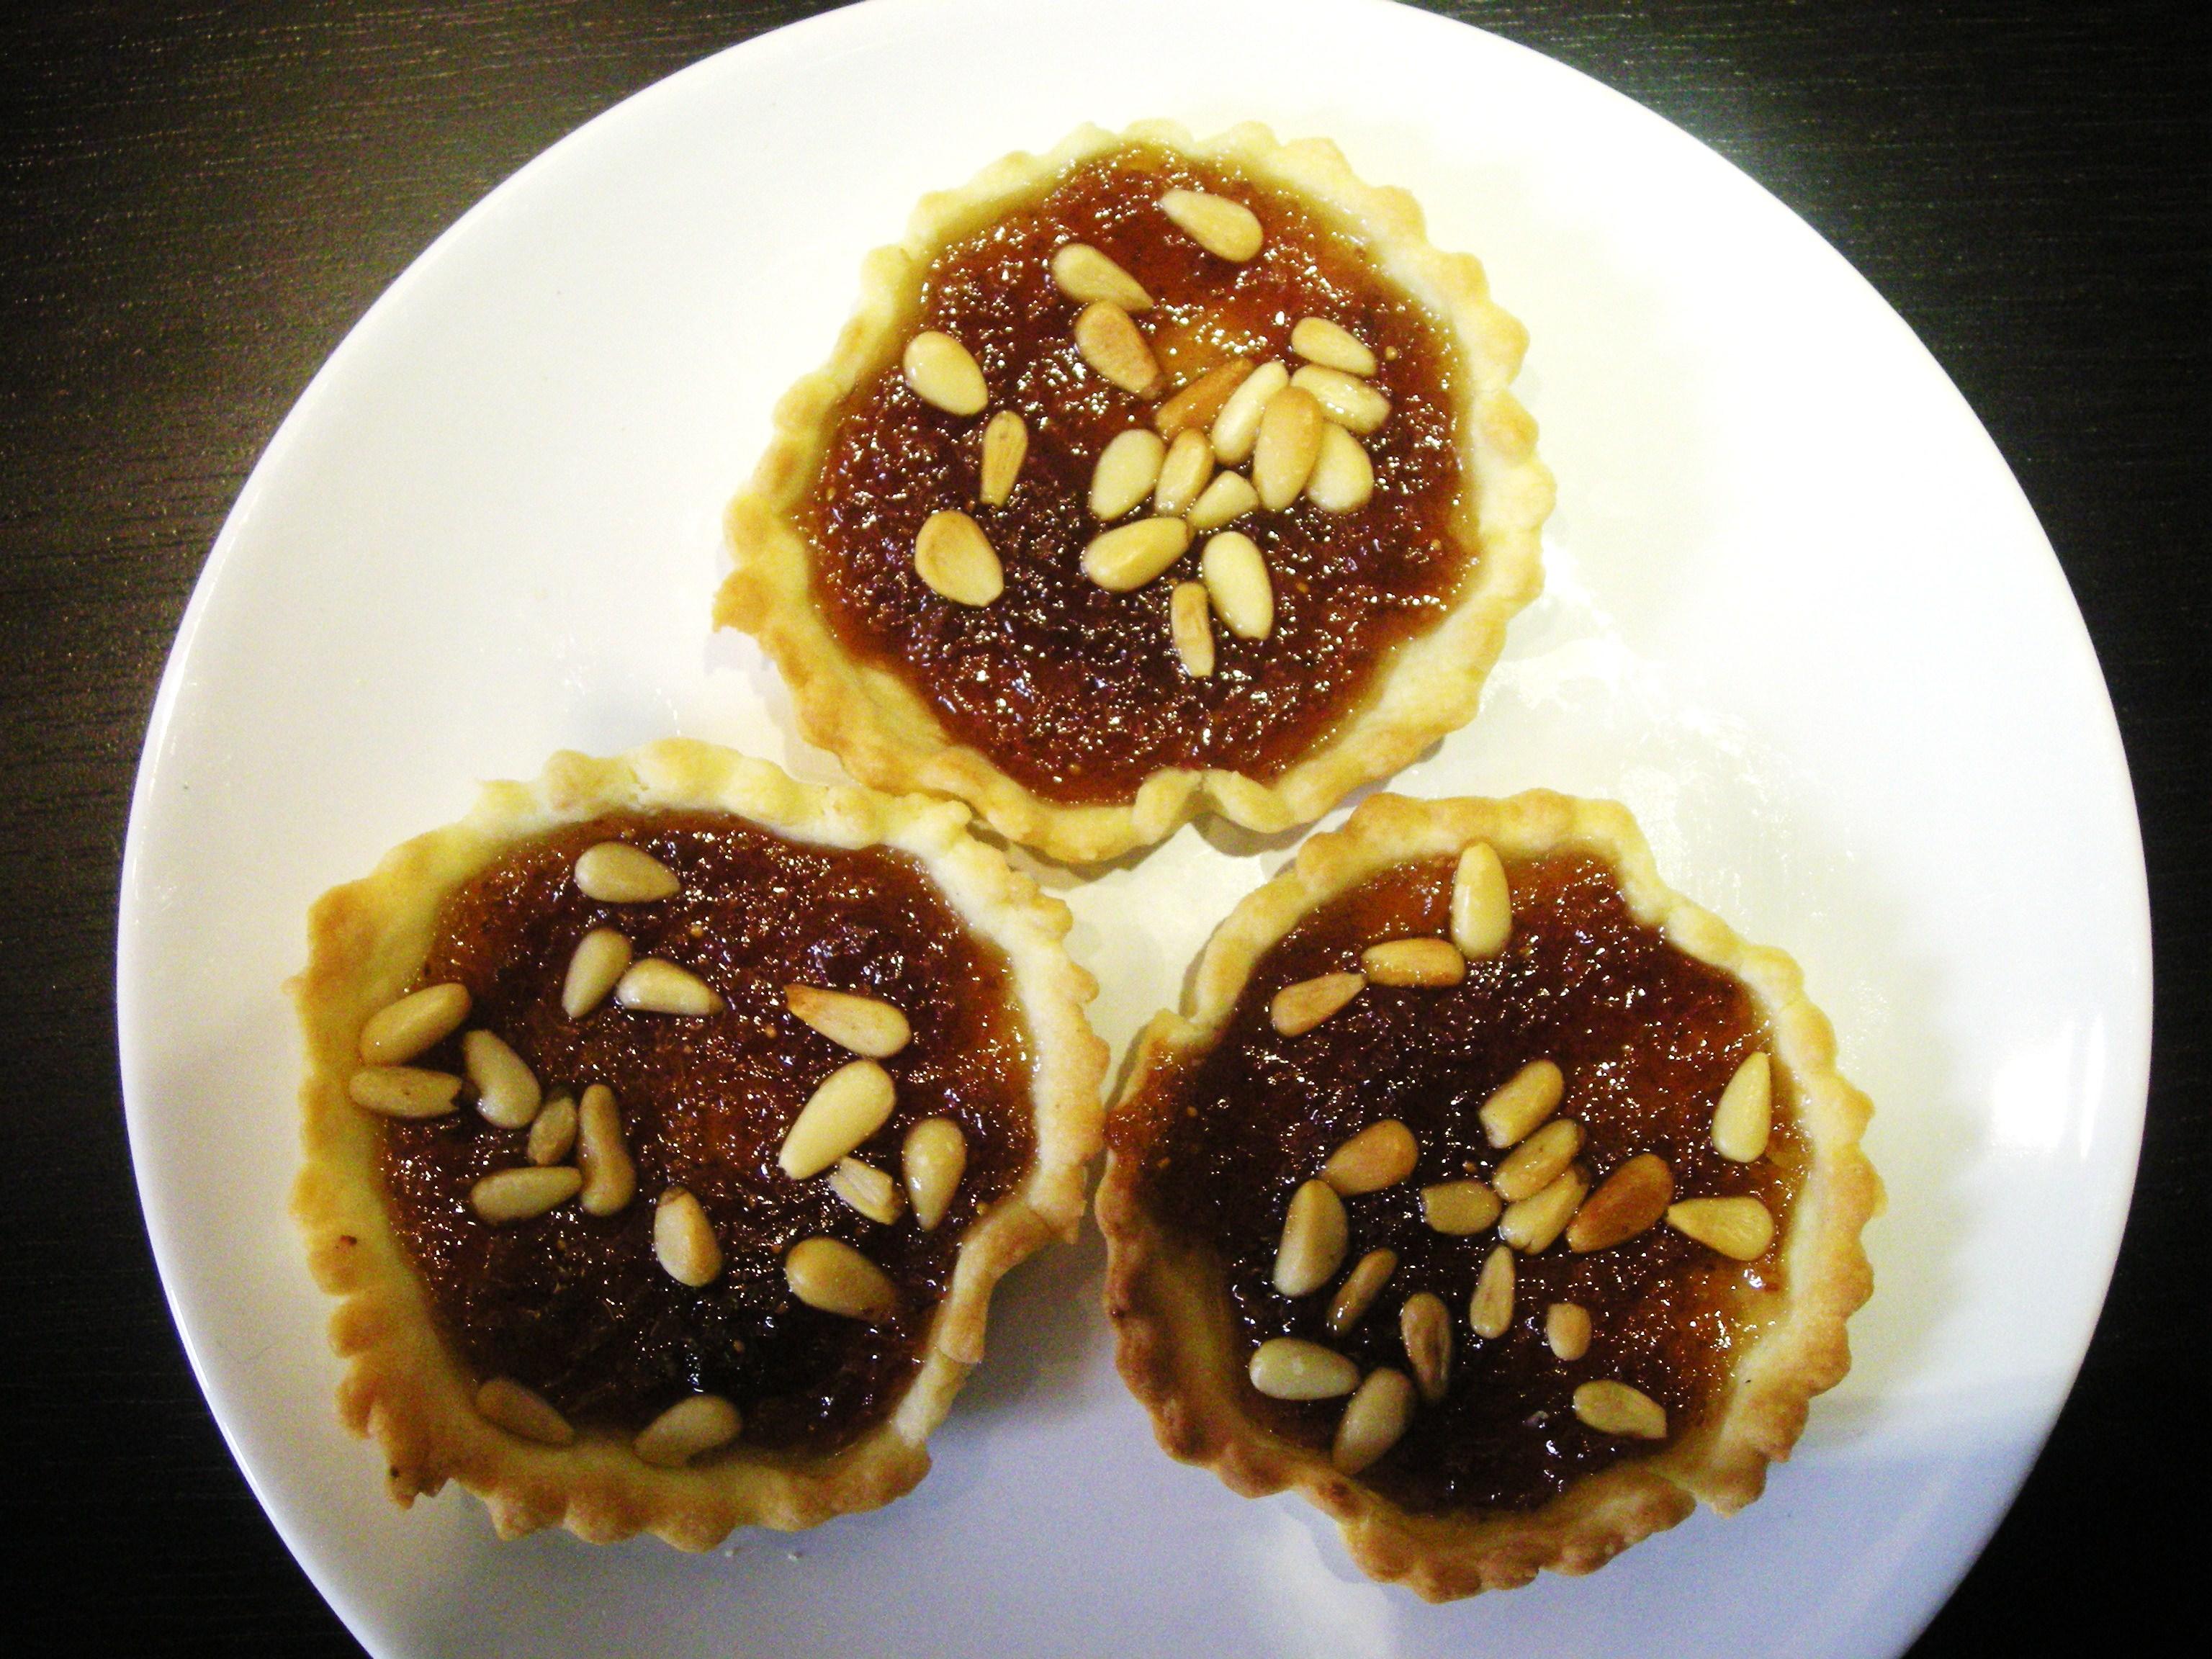 Recette dessert blog partenaire : “Mini-tartelettes figues-pignons”